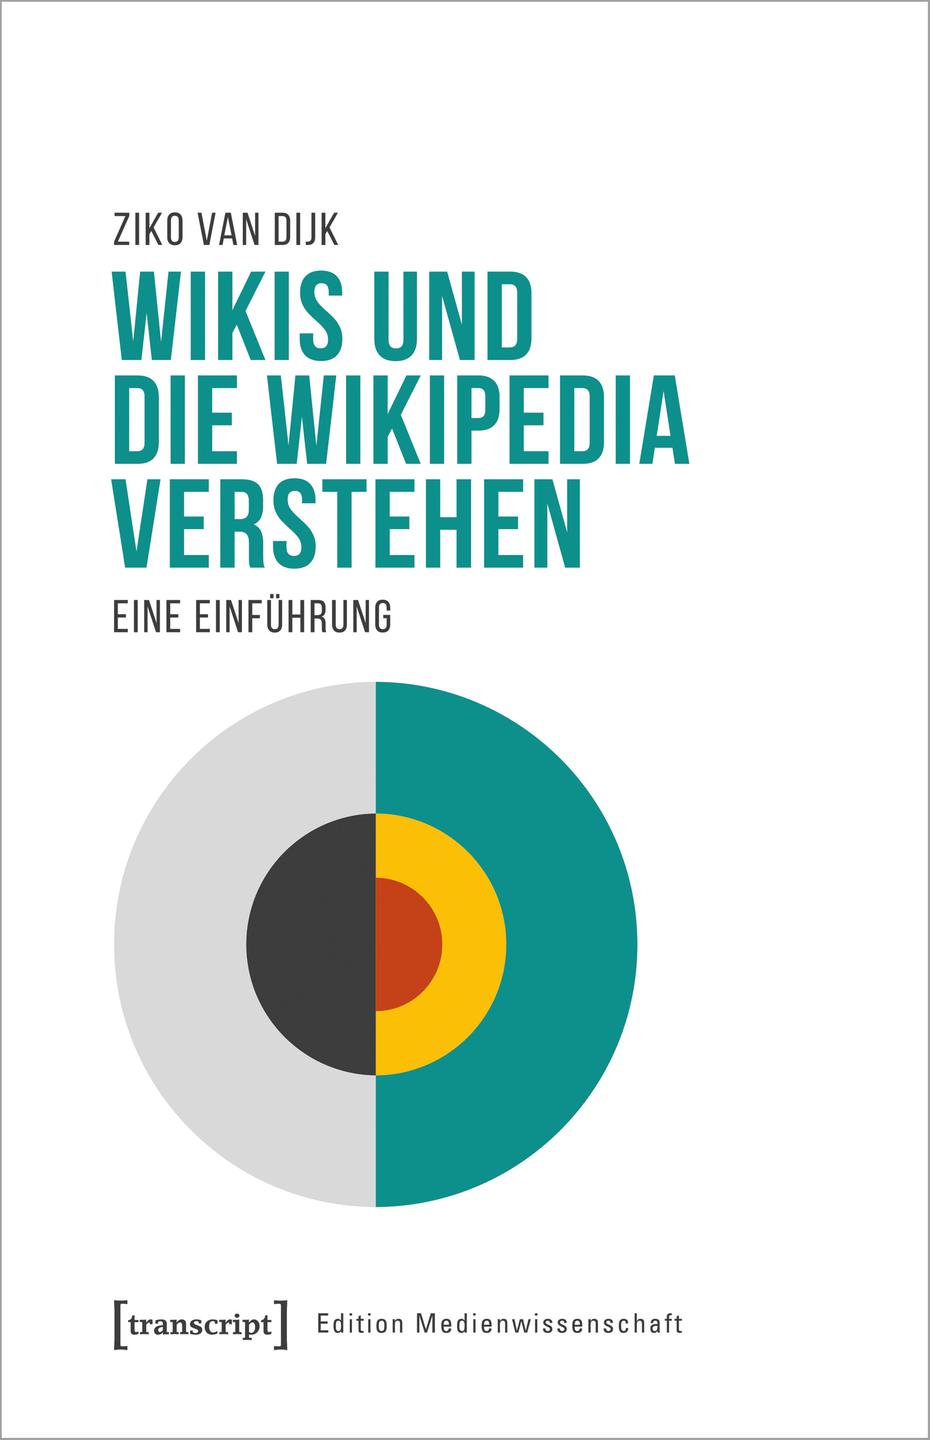 Weißes Buchcover mit der Darstellung eines Kreises, der in verschiedene Farbflächen unterteilt ist.